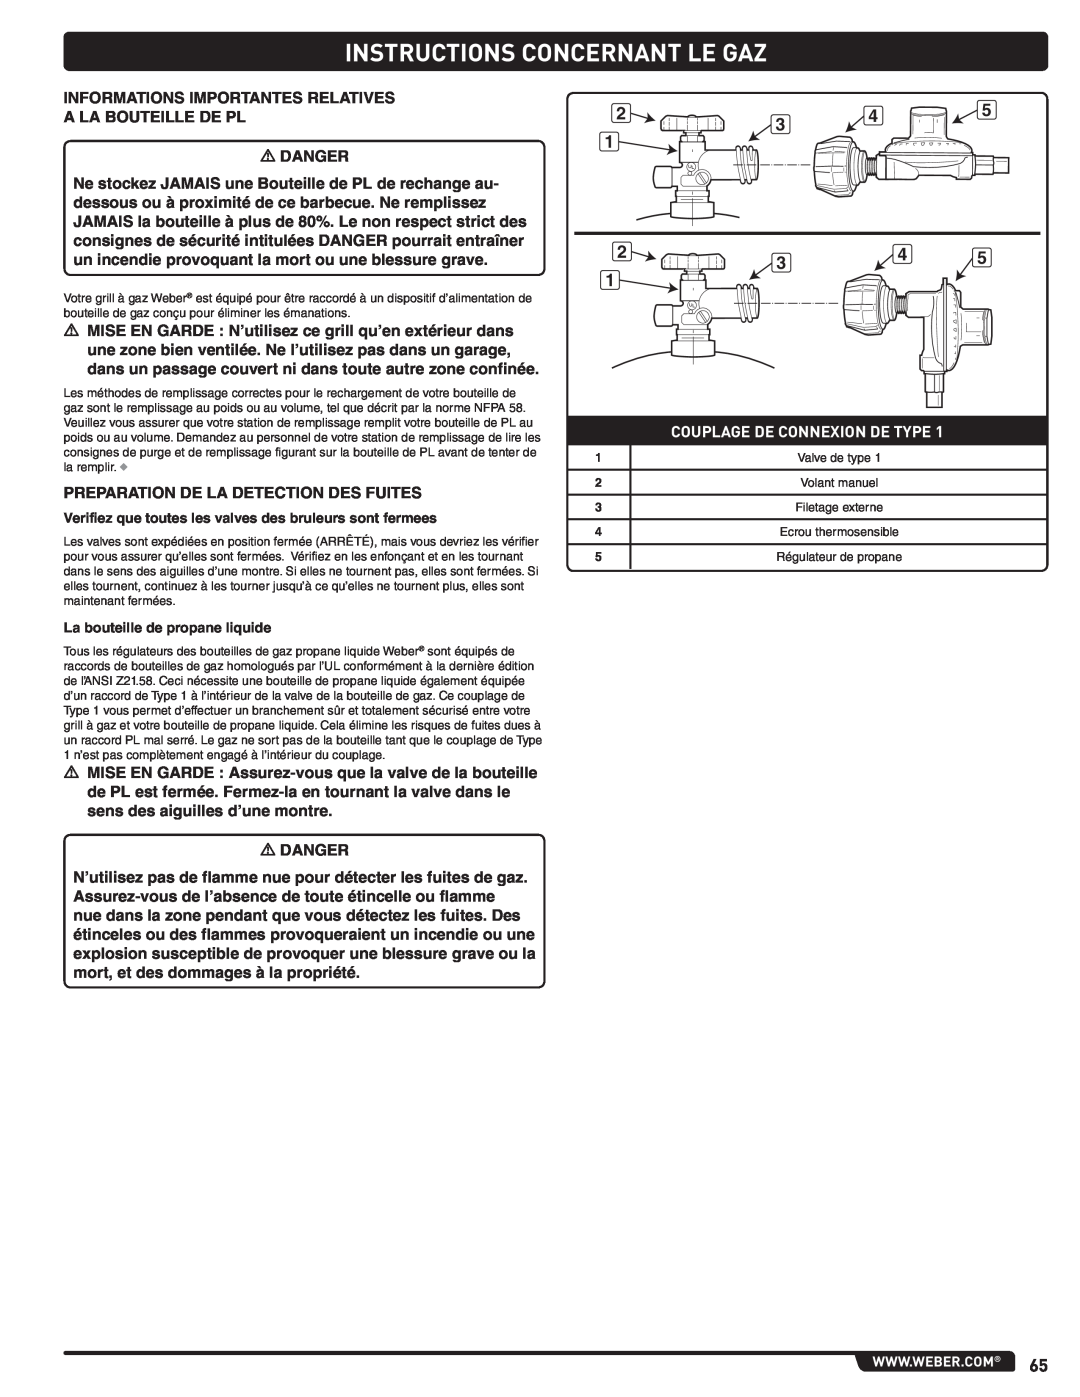 Summit 56214 manual Instructions Concernant Le Gaz, Couplage De Connexion De Type, La bouteille de propane liquide 